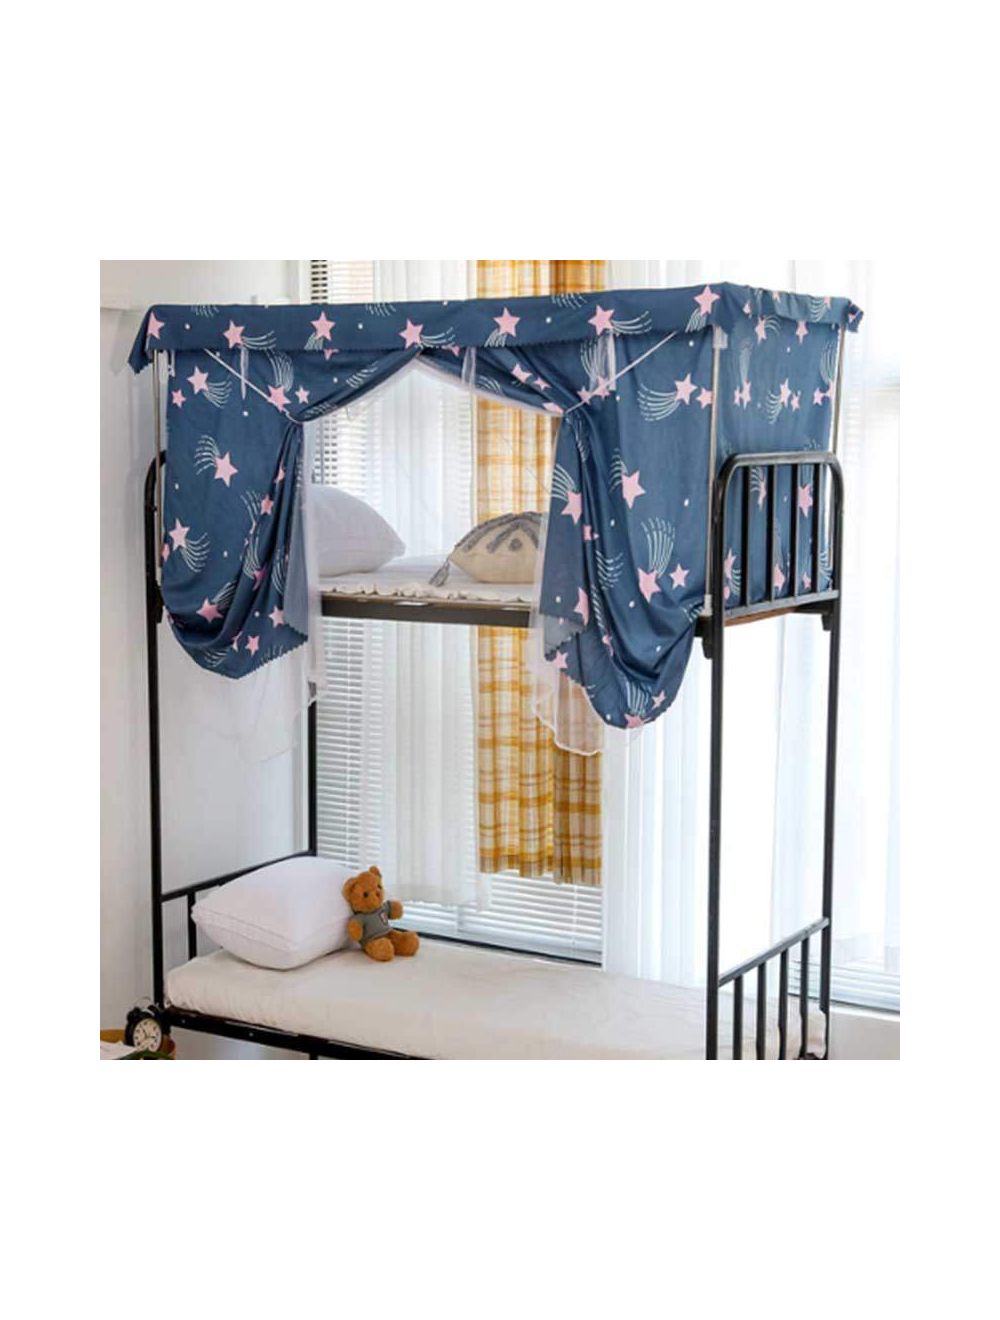 Deals for Less -Bed curtain & metal frame for upper deck single bed, Star design denim blue color-BCF43-03